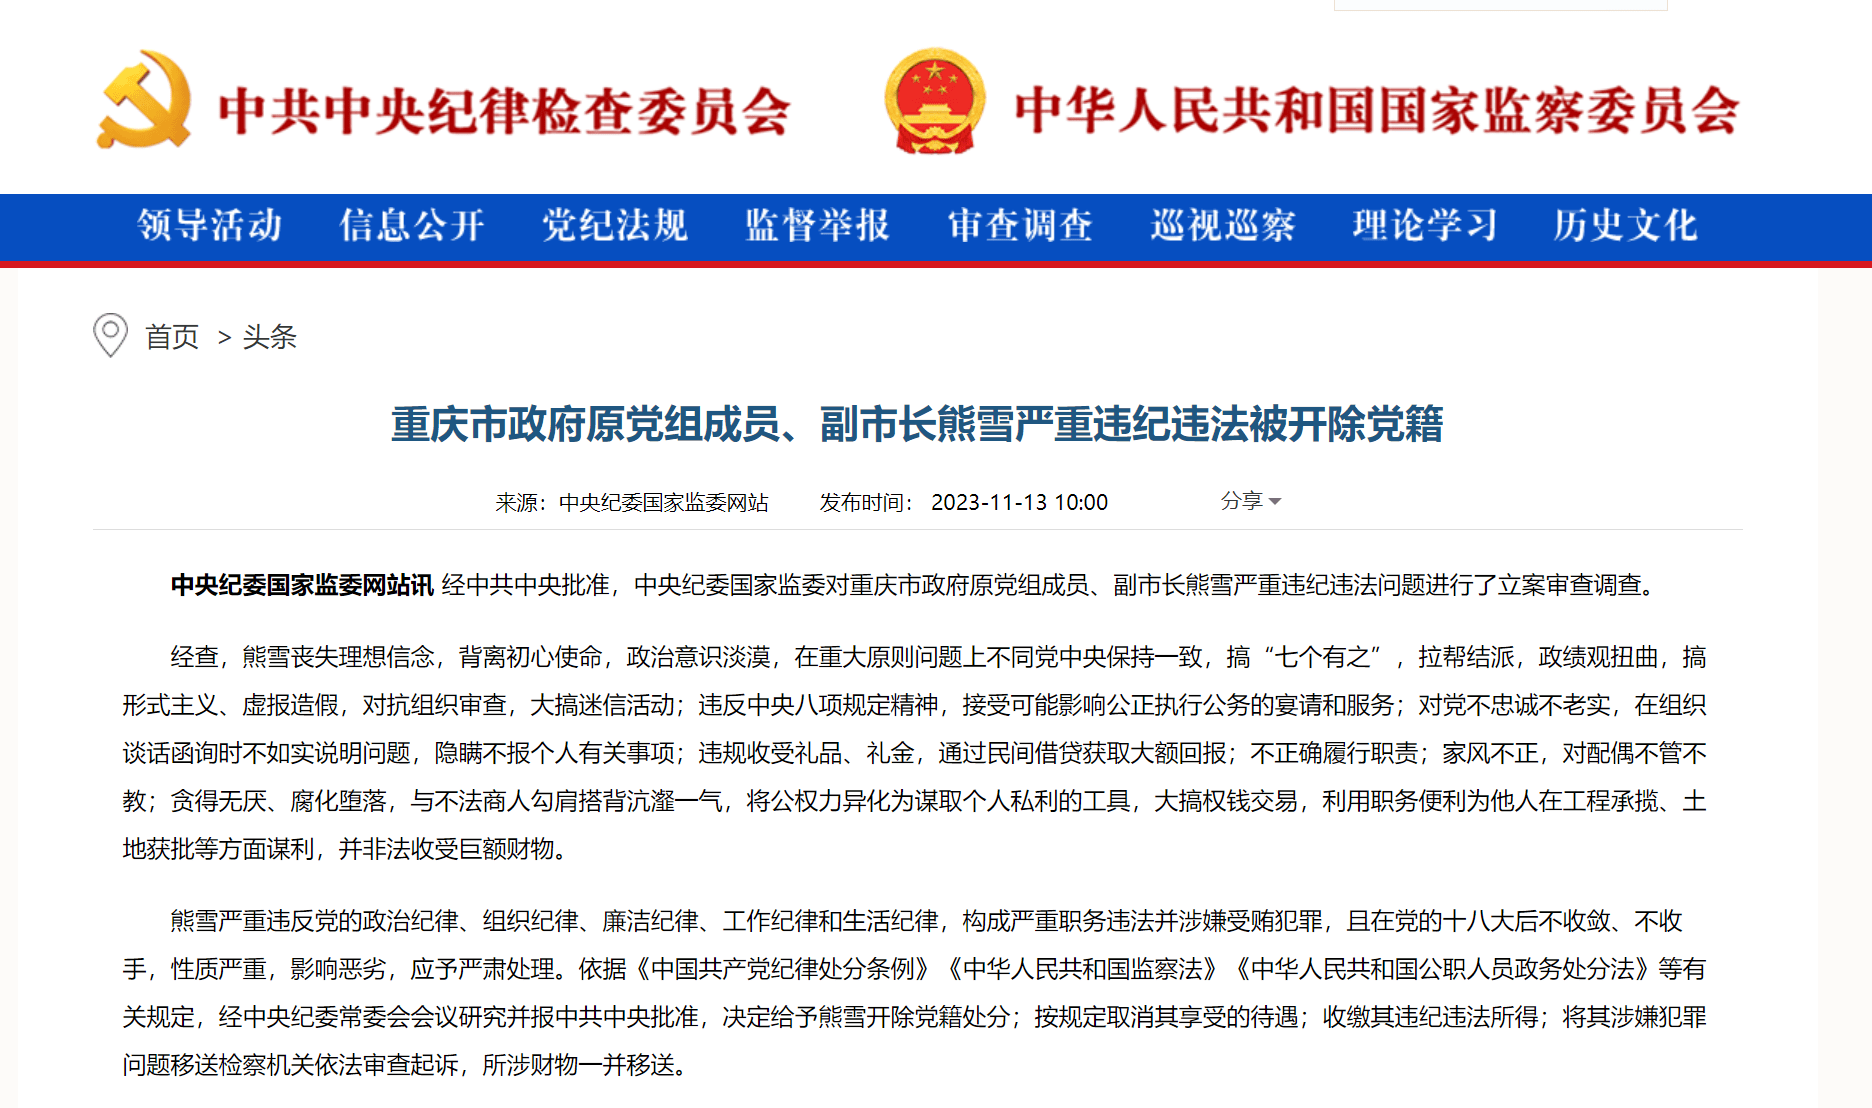 重庆市原副市长熊雪被开除党籍 33岁成为副区长 被指“对配偶不管不教”|重庆市|中央纪委|落马_新浪科技_新浪网